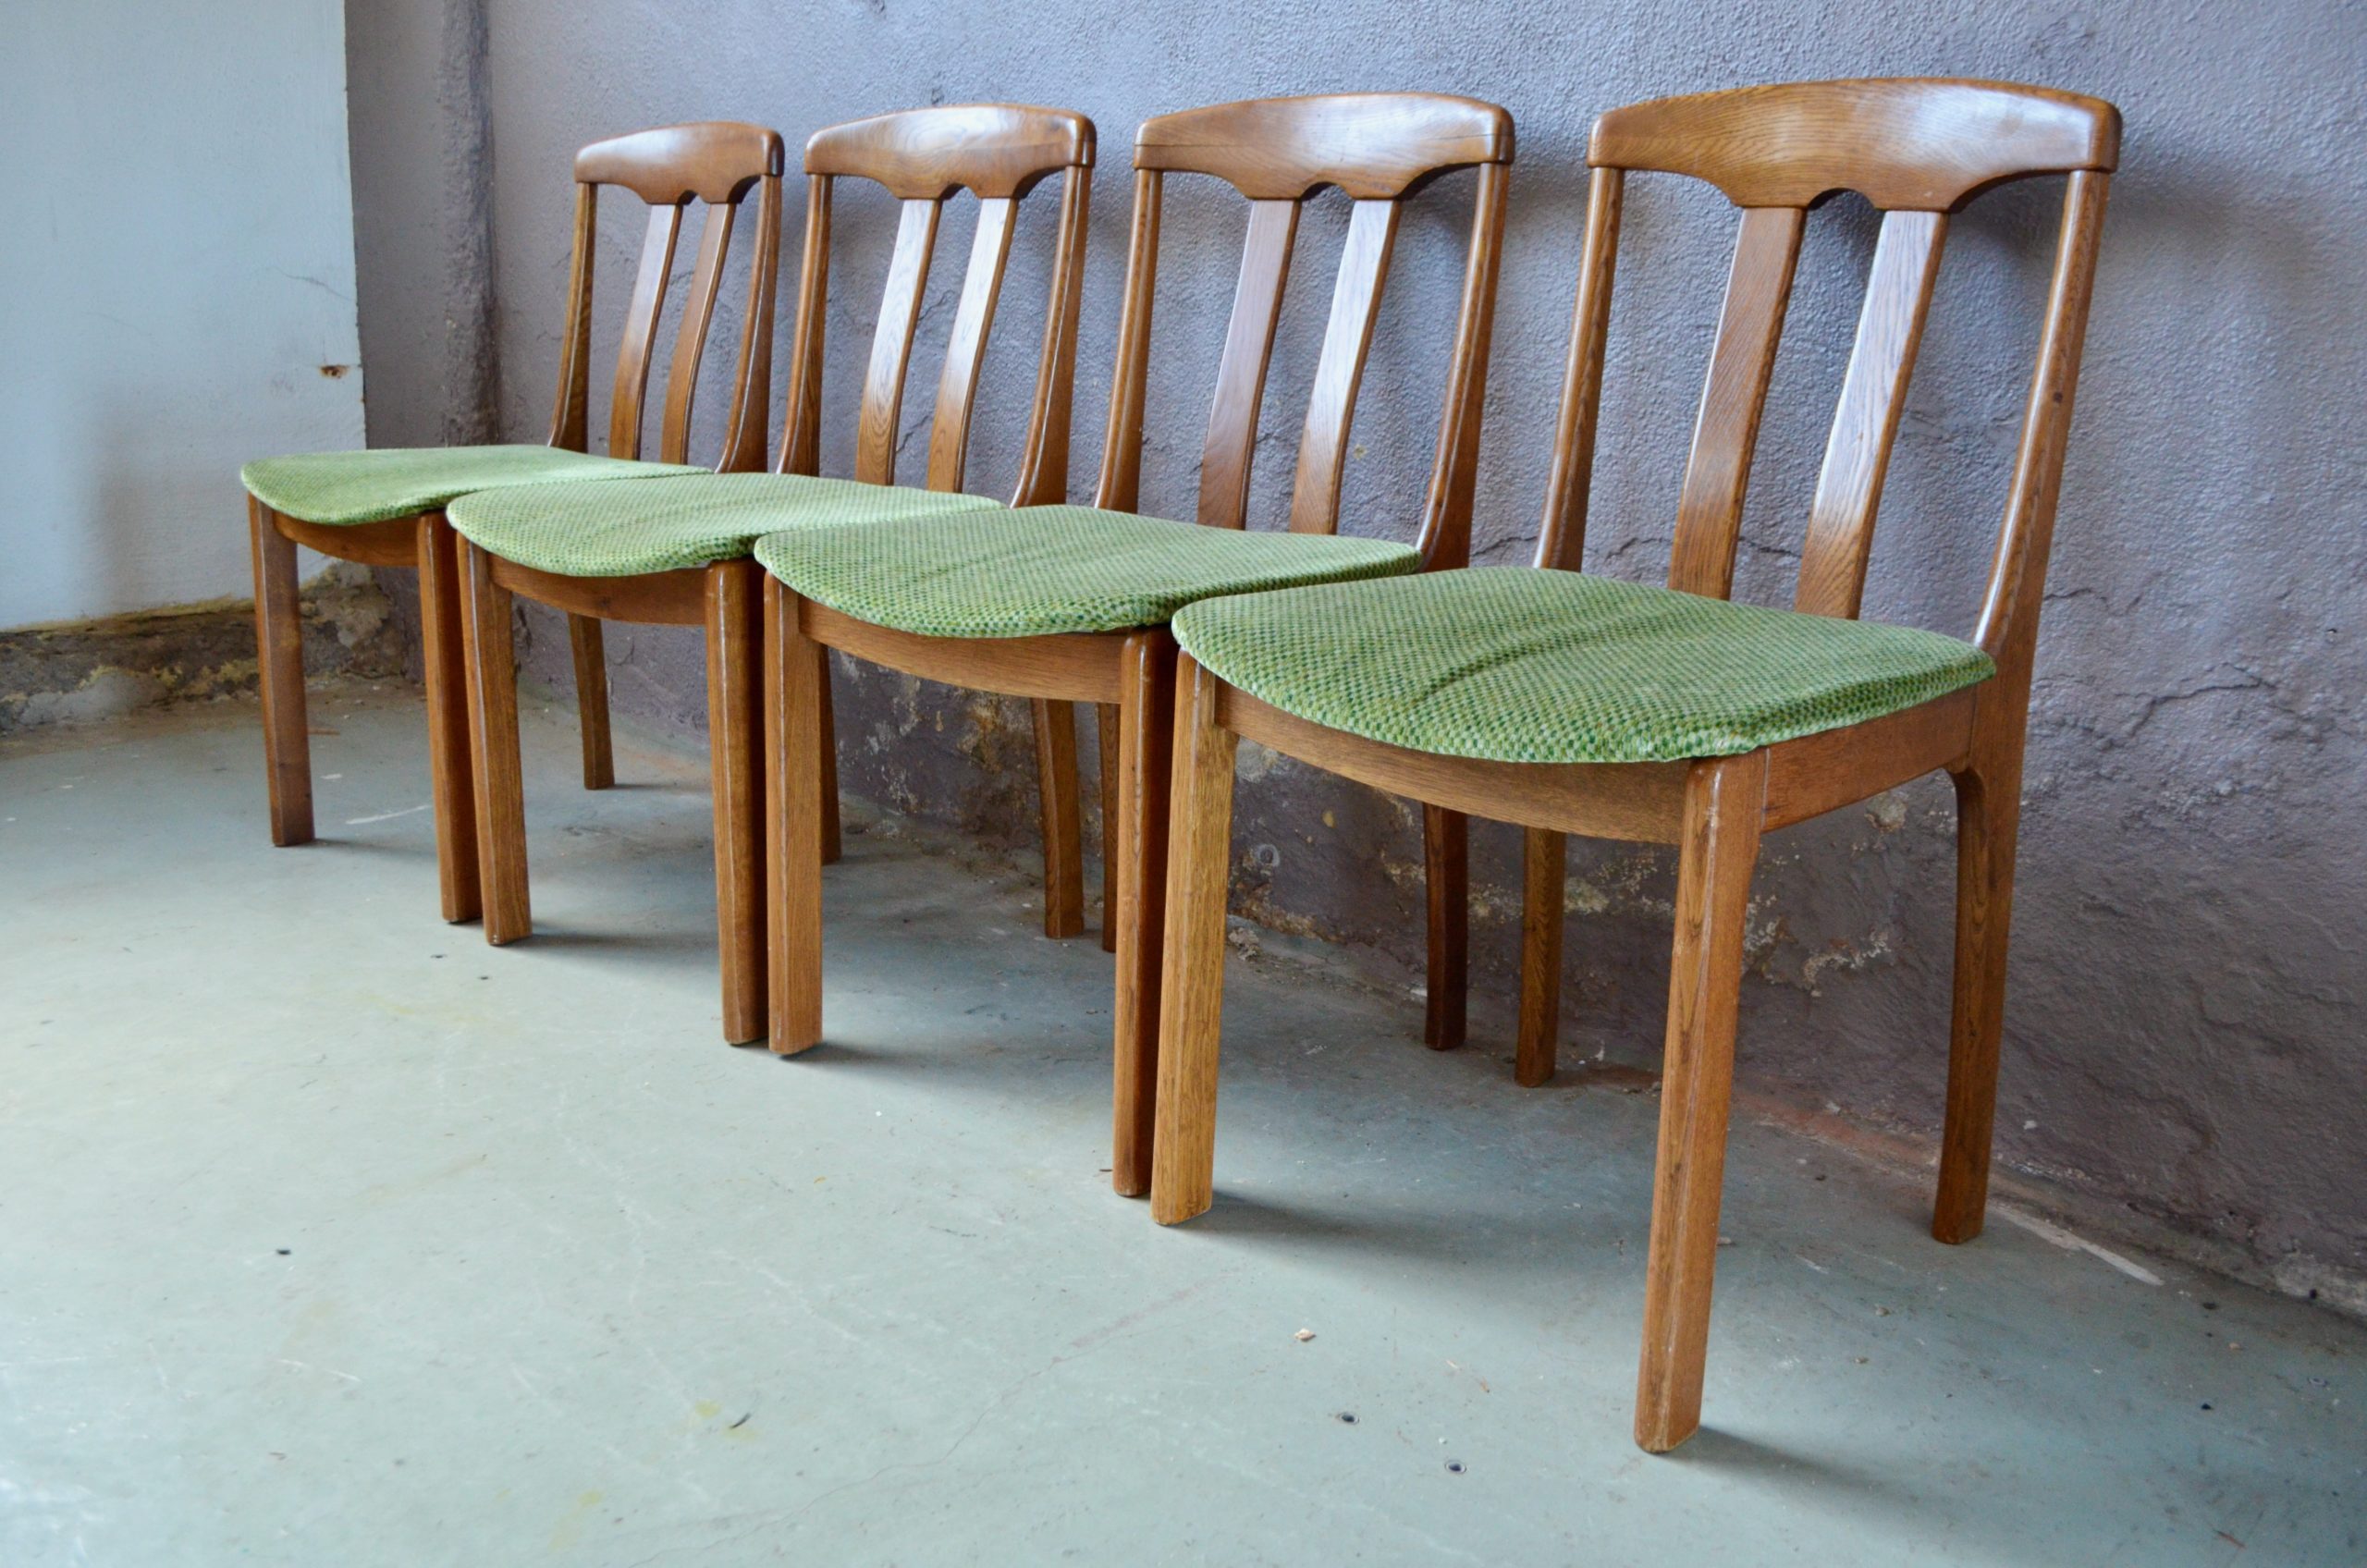 Cet série de 4 chaises nous charme par son design organique scandinave est son aspect accueillant et confortable. Leur structure en chêne massif est travaillé dans les courbes et l'épaisseur ce qui leur offre des lignes rassurantes. Les assises en velours vert à discret motif se marrie parfaitement avec le jolie teinte profonde et veinée du bois.